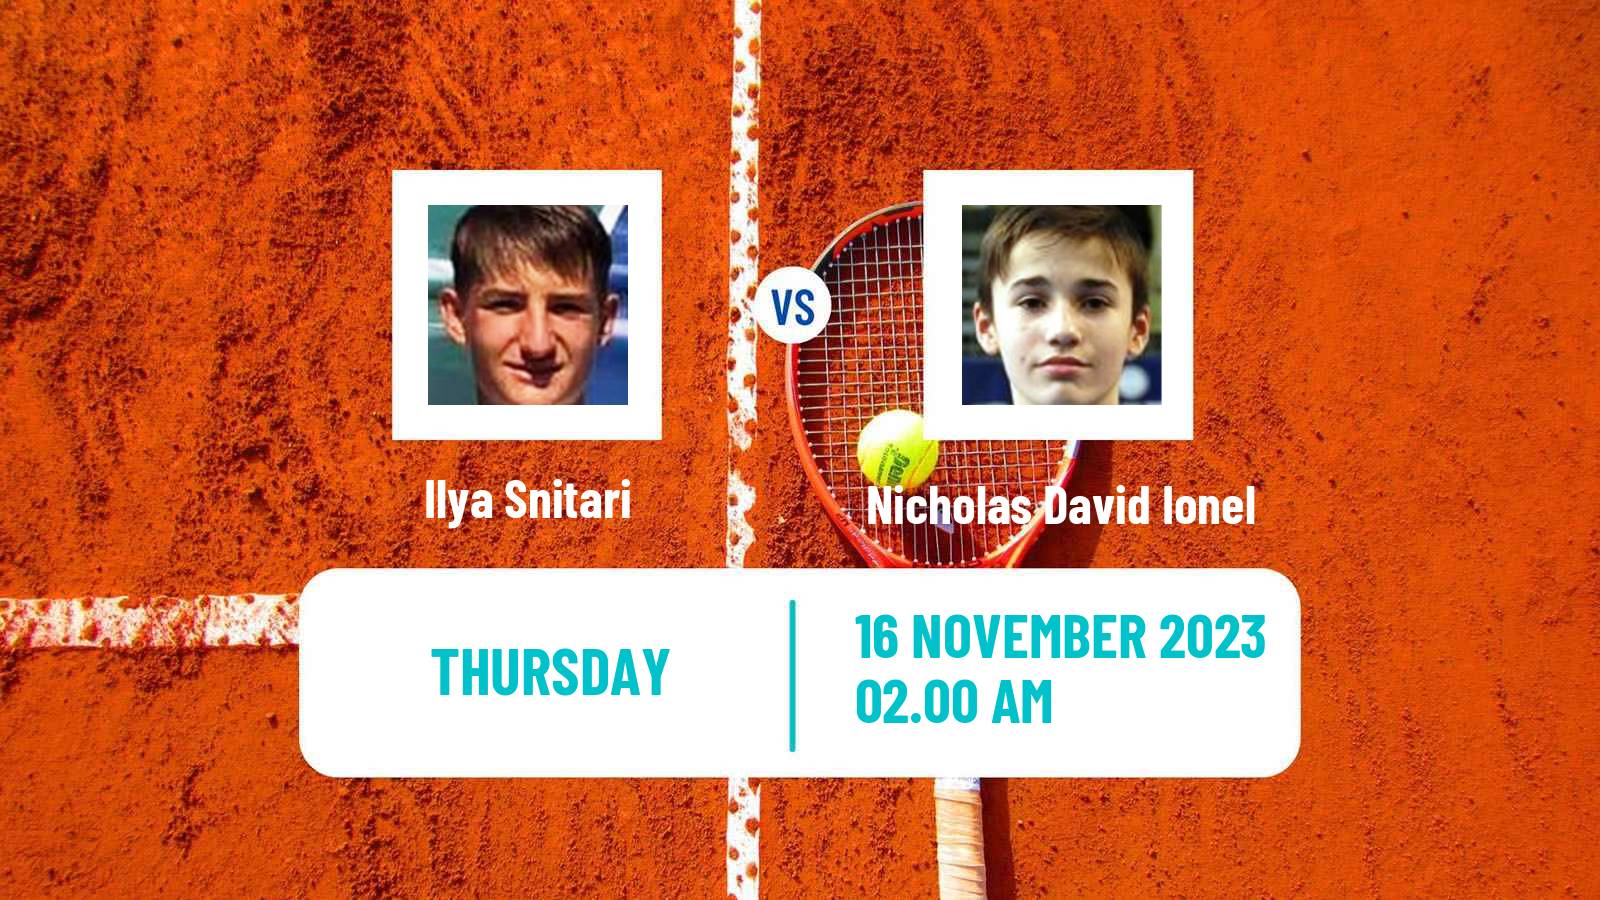 Tennis ITF M25 Antalya 2 Men Ilya Snitari - Nicholas David Ionel